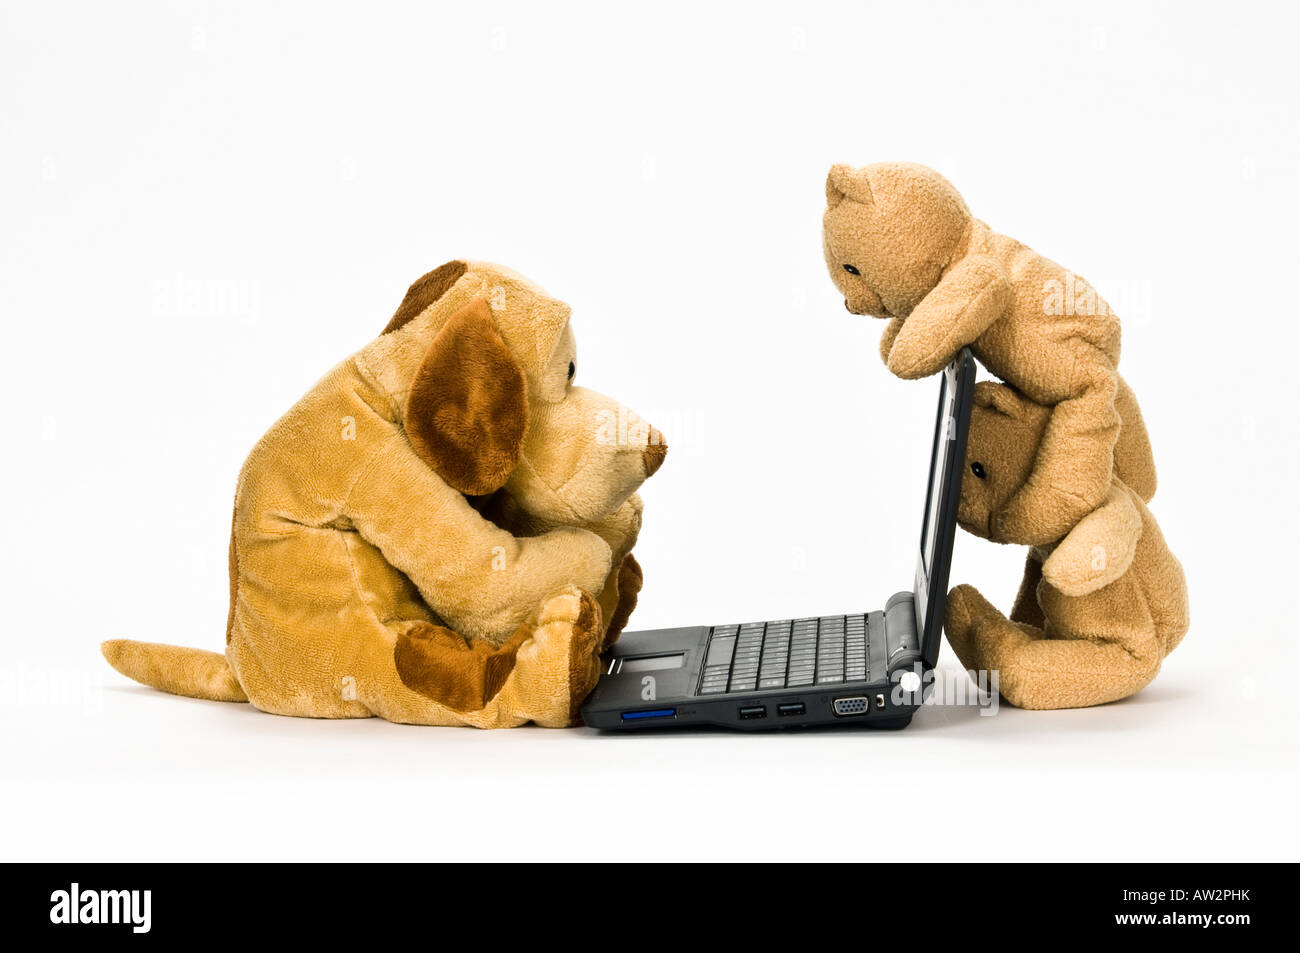 Doudou chien marron working at laptop avec deux ours brun en peluche regarder à l'arrière de l'écran Banque D'Images